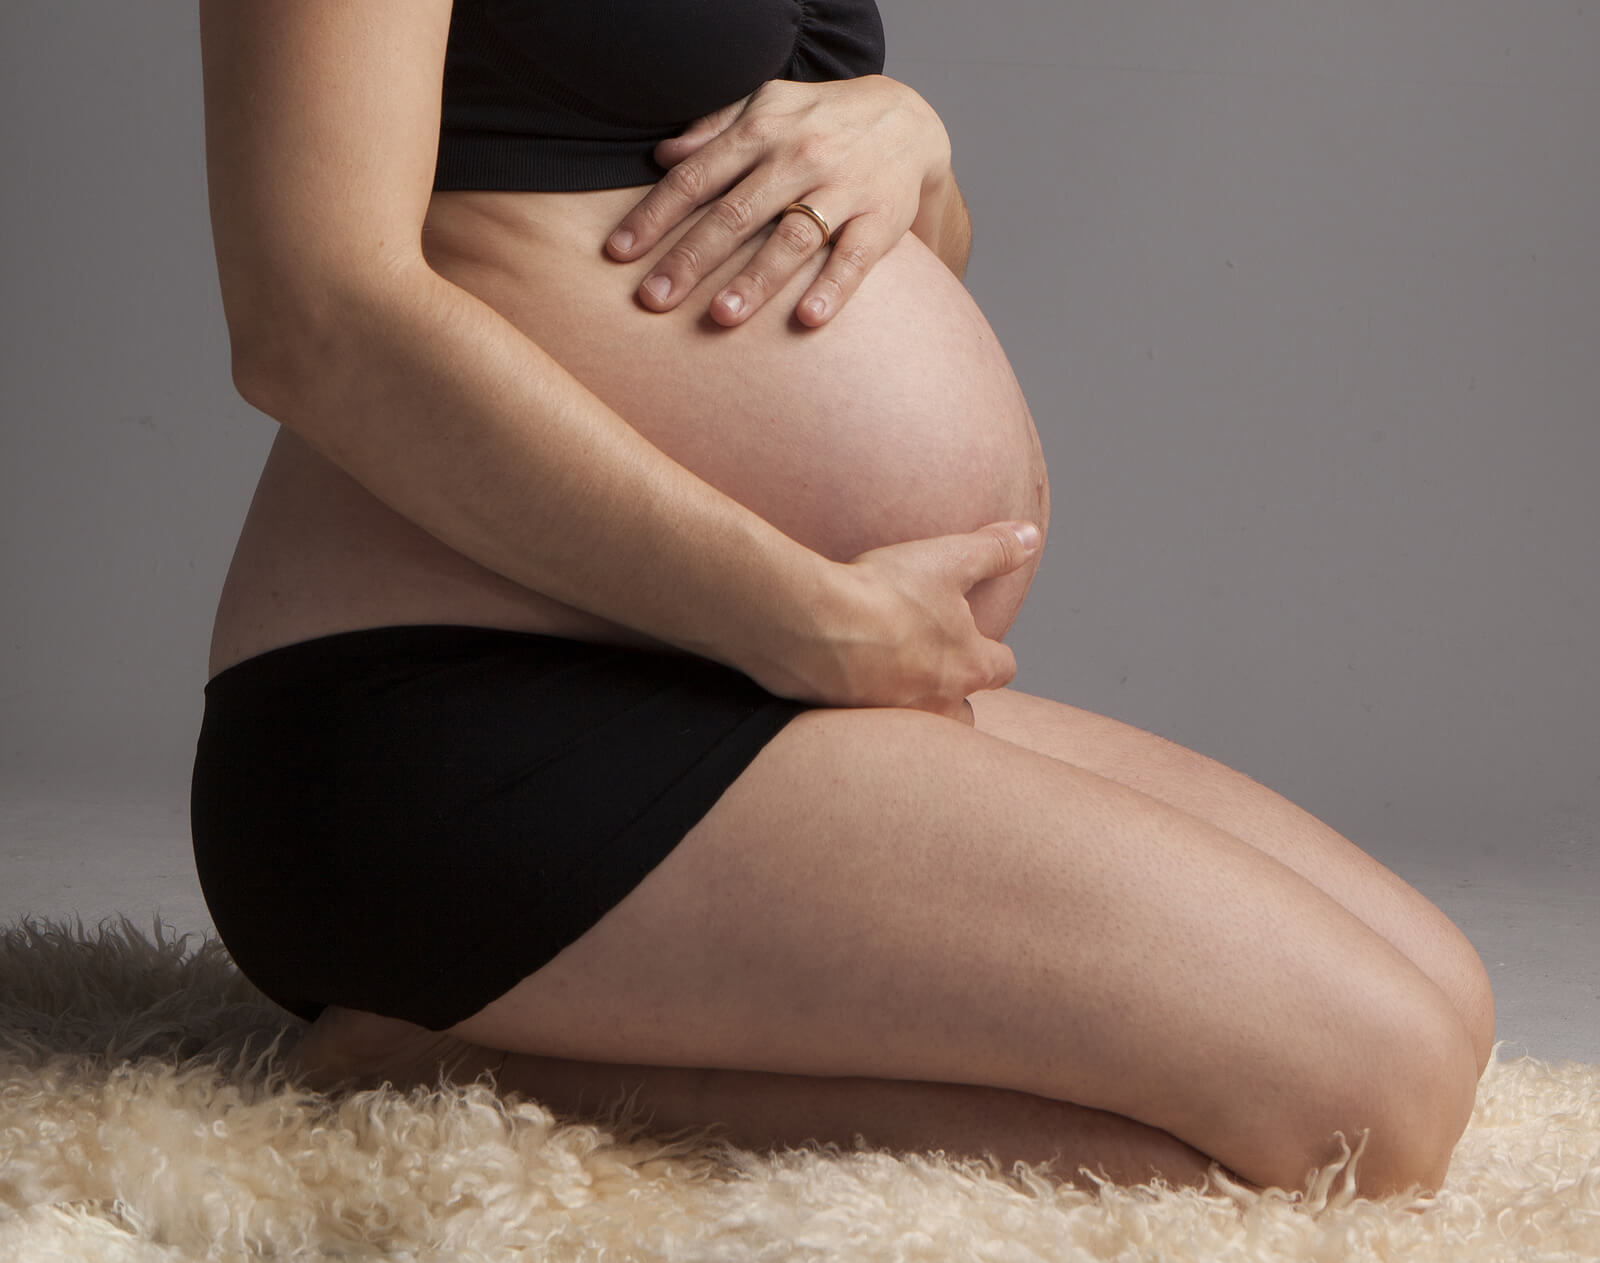 Il trattamento della clamidia durante la gravidanza richiede speciale attenzione